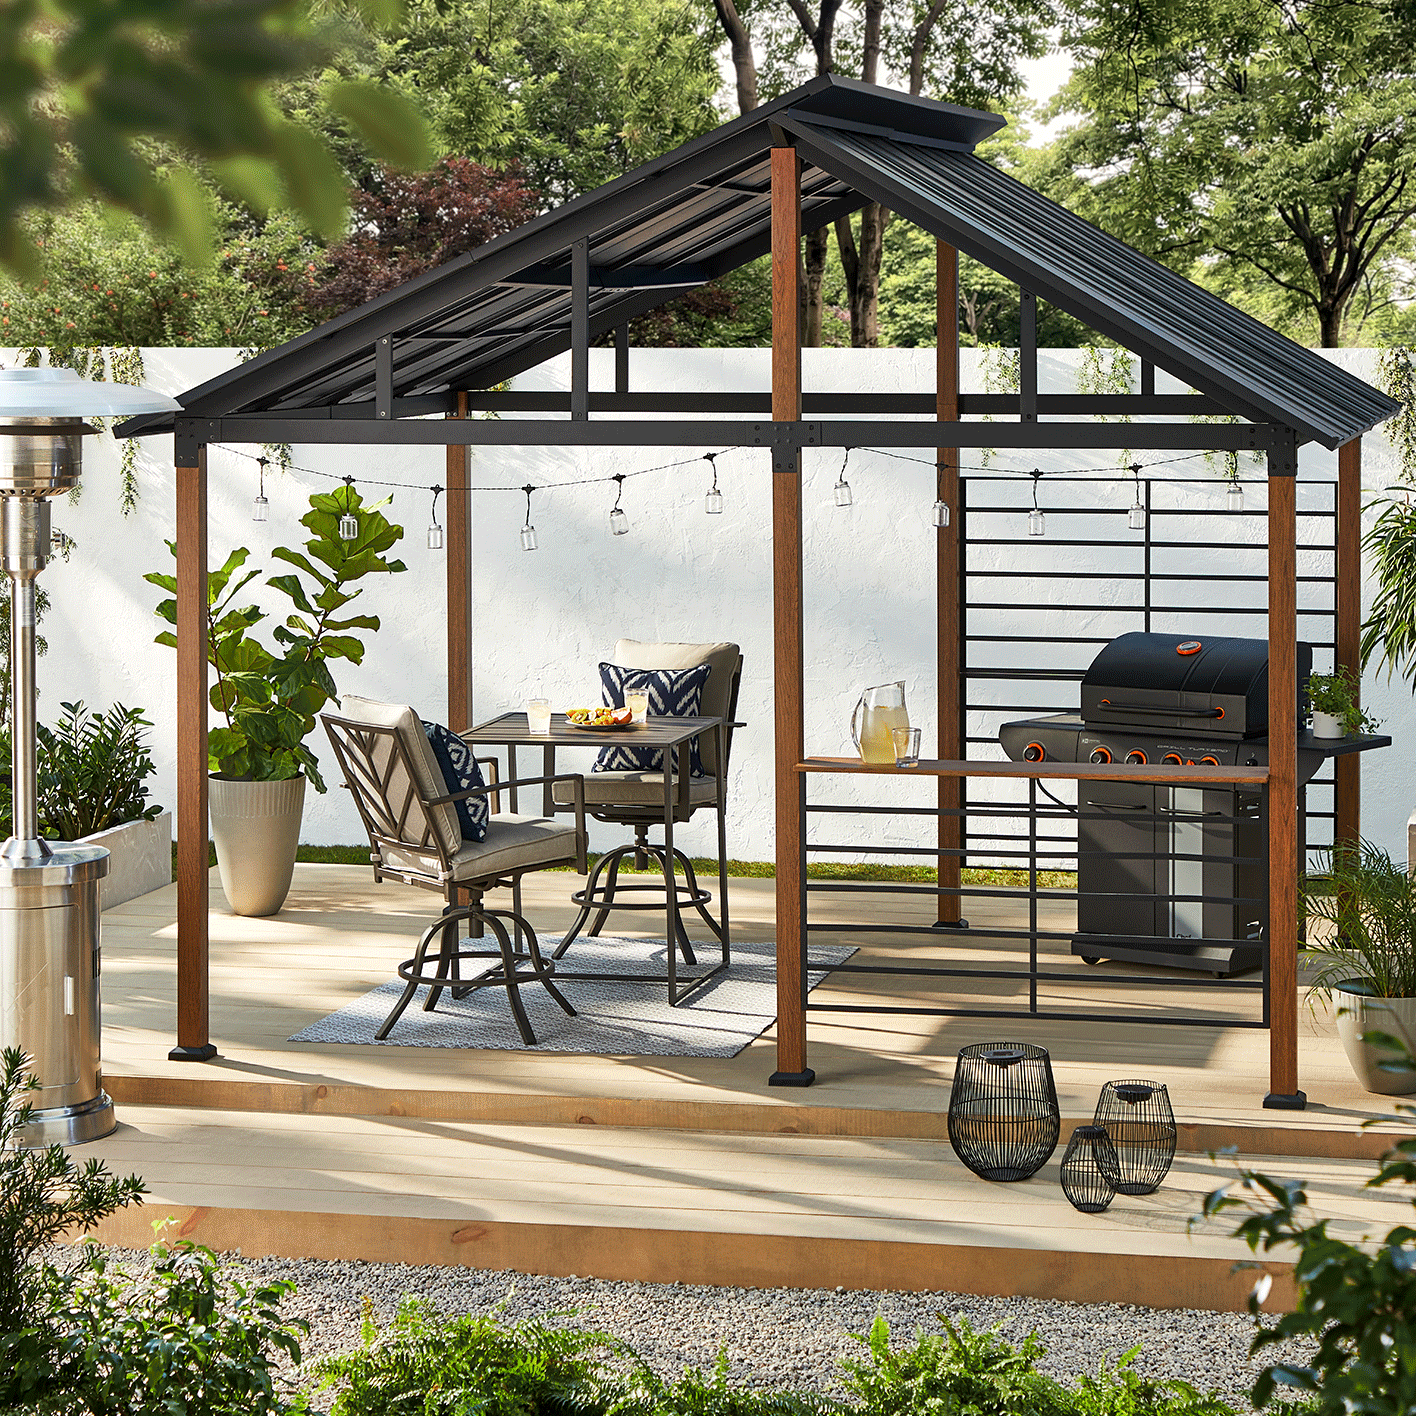 Abri de jardin CANVAS Plateau sur une terrasse en bois avec ensemble de meubles à dîner et barbecue.